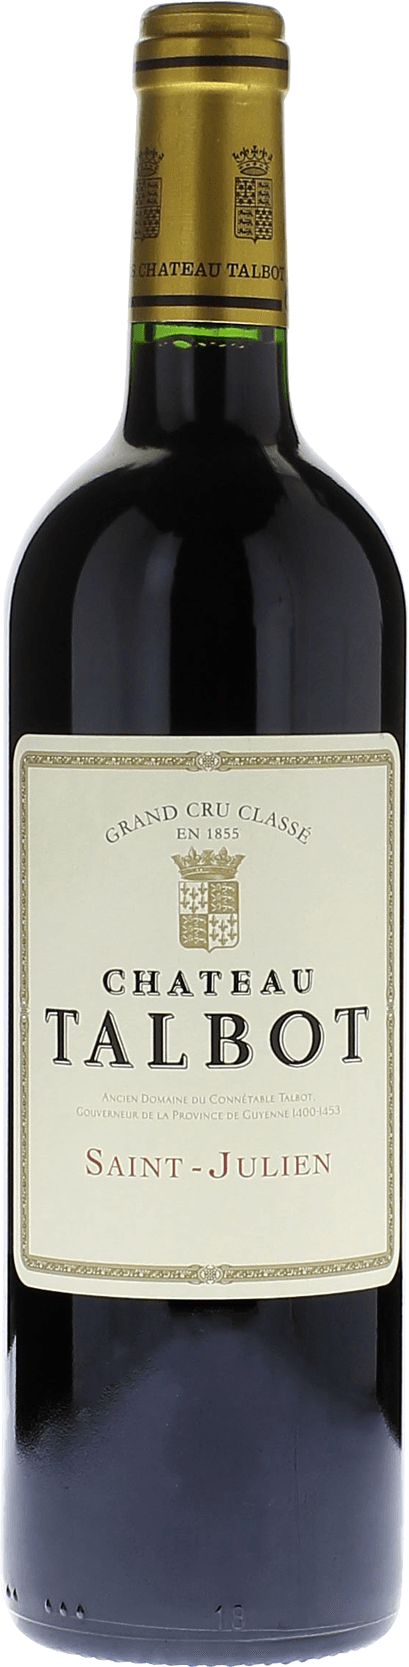 Talbot 1989 4me Grand cru class Saint-Julien, Bordeaux rouge